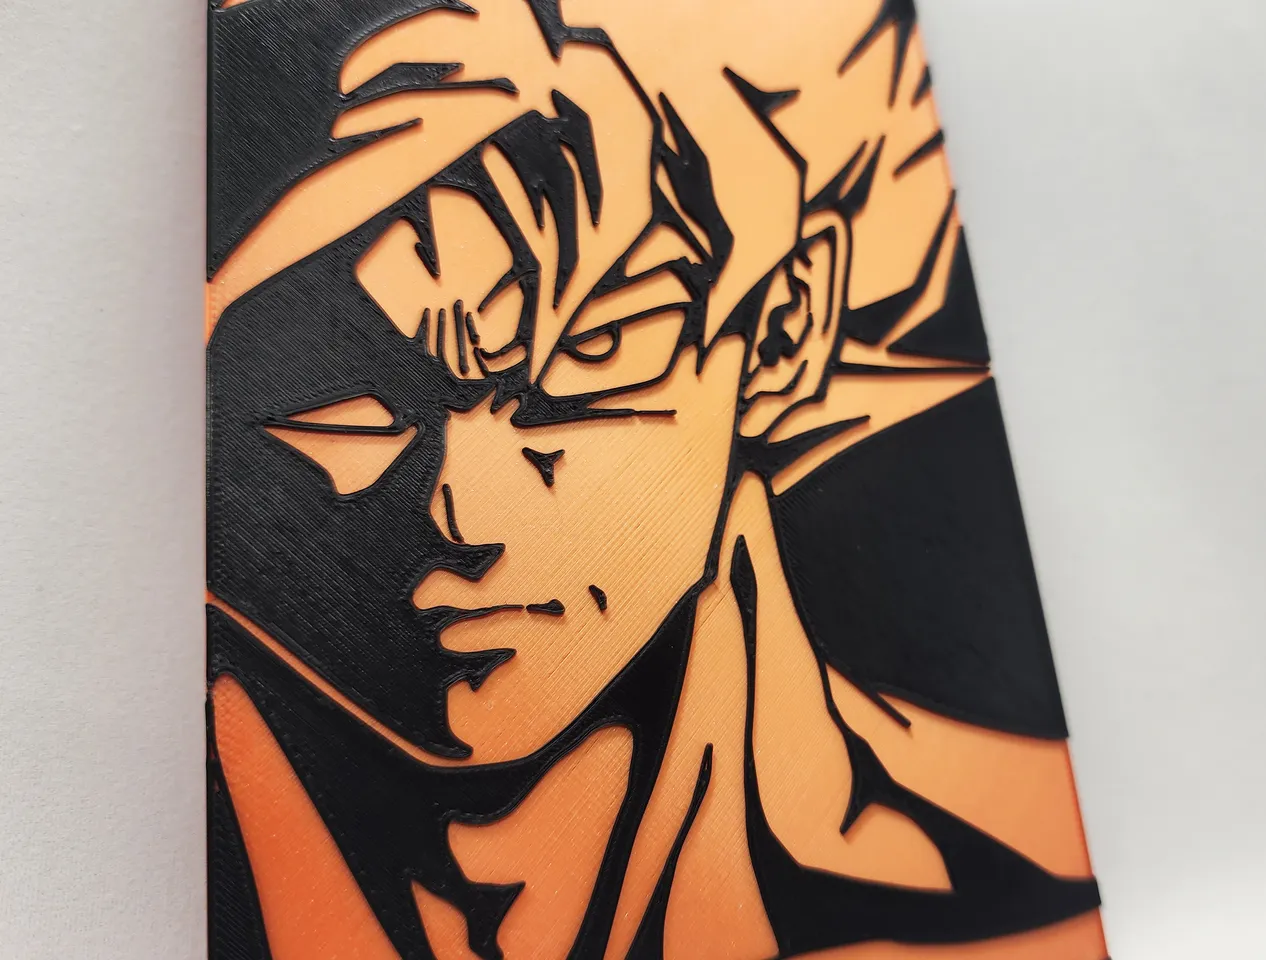 Super Saiyan Goku 2 Color by Triple G Workshop, Download free STL model